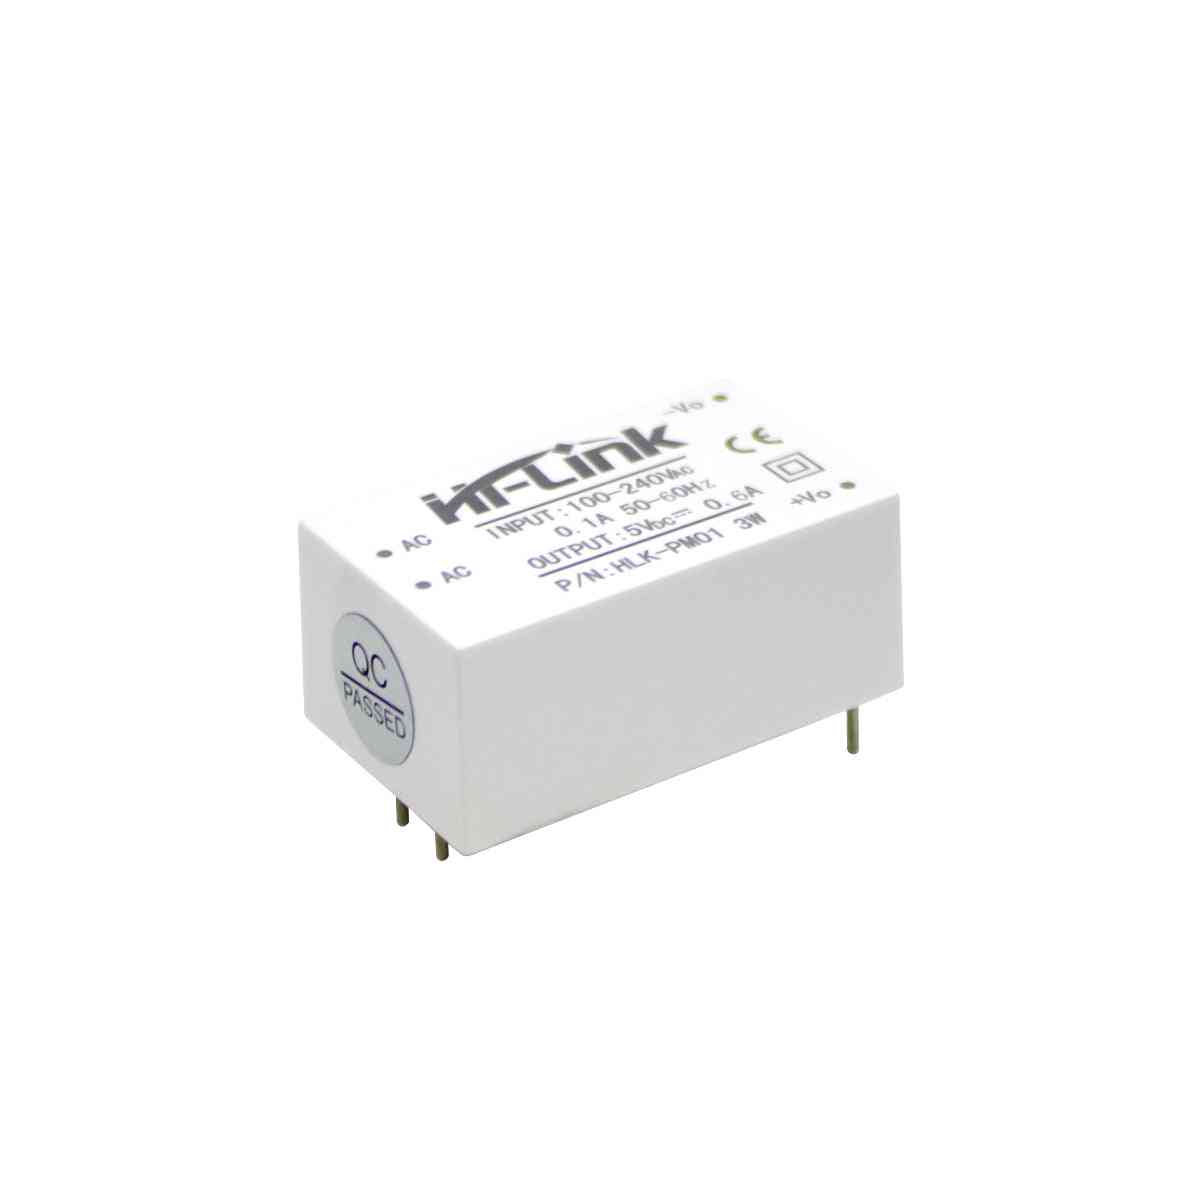 Smart-remote hlk-pm01 fehér váltakozó áramú / egyenáramú tápegység